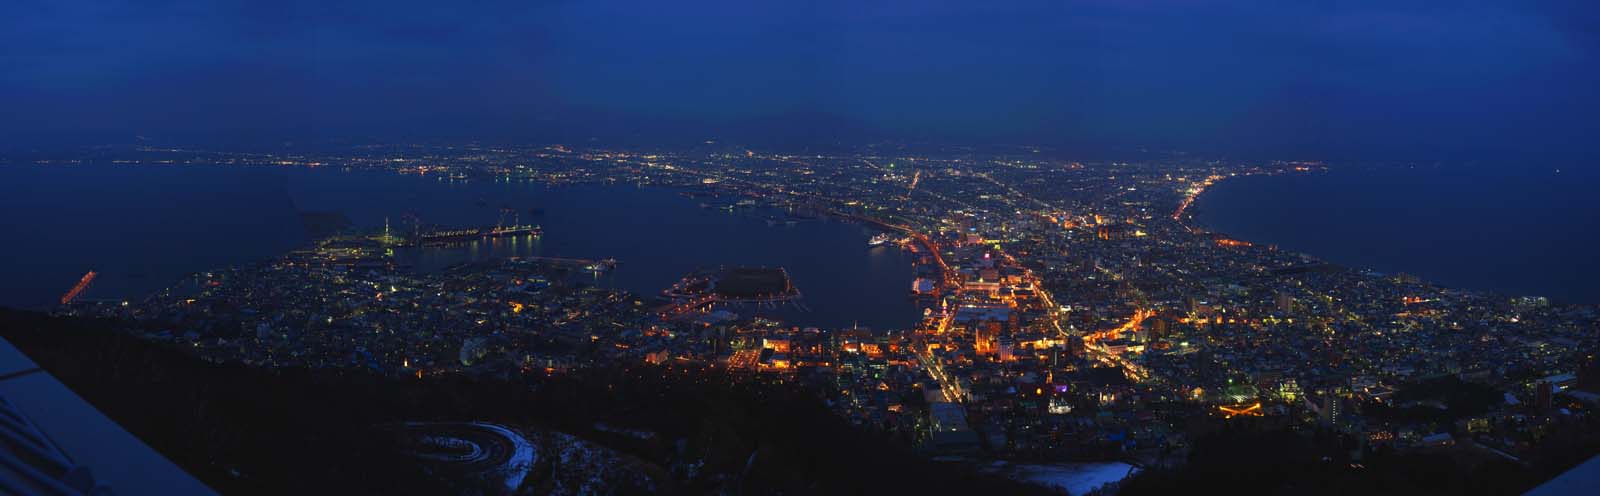 photo, la matire, libre, amnage, dcrivez, photo de la rserve,Une vue de la nuit de Mt. Hakodate-yama, Illuminations, Un observatoire, lumire de ville, ville de port